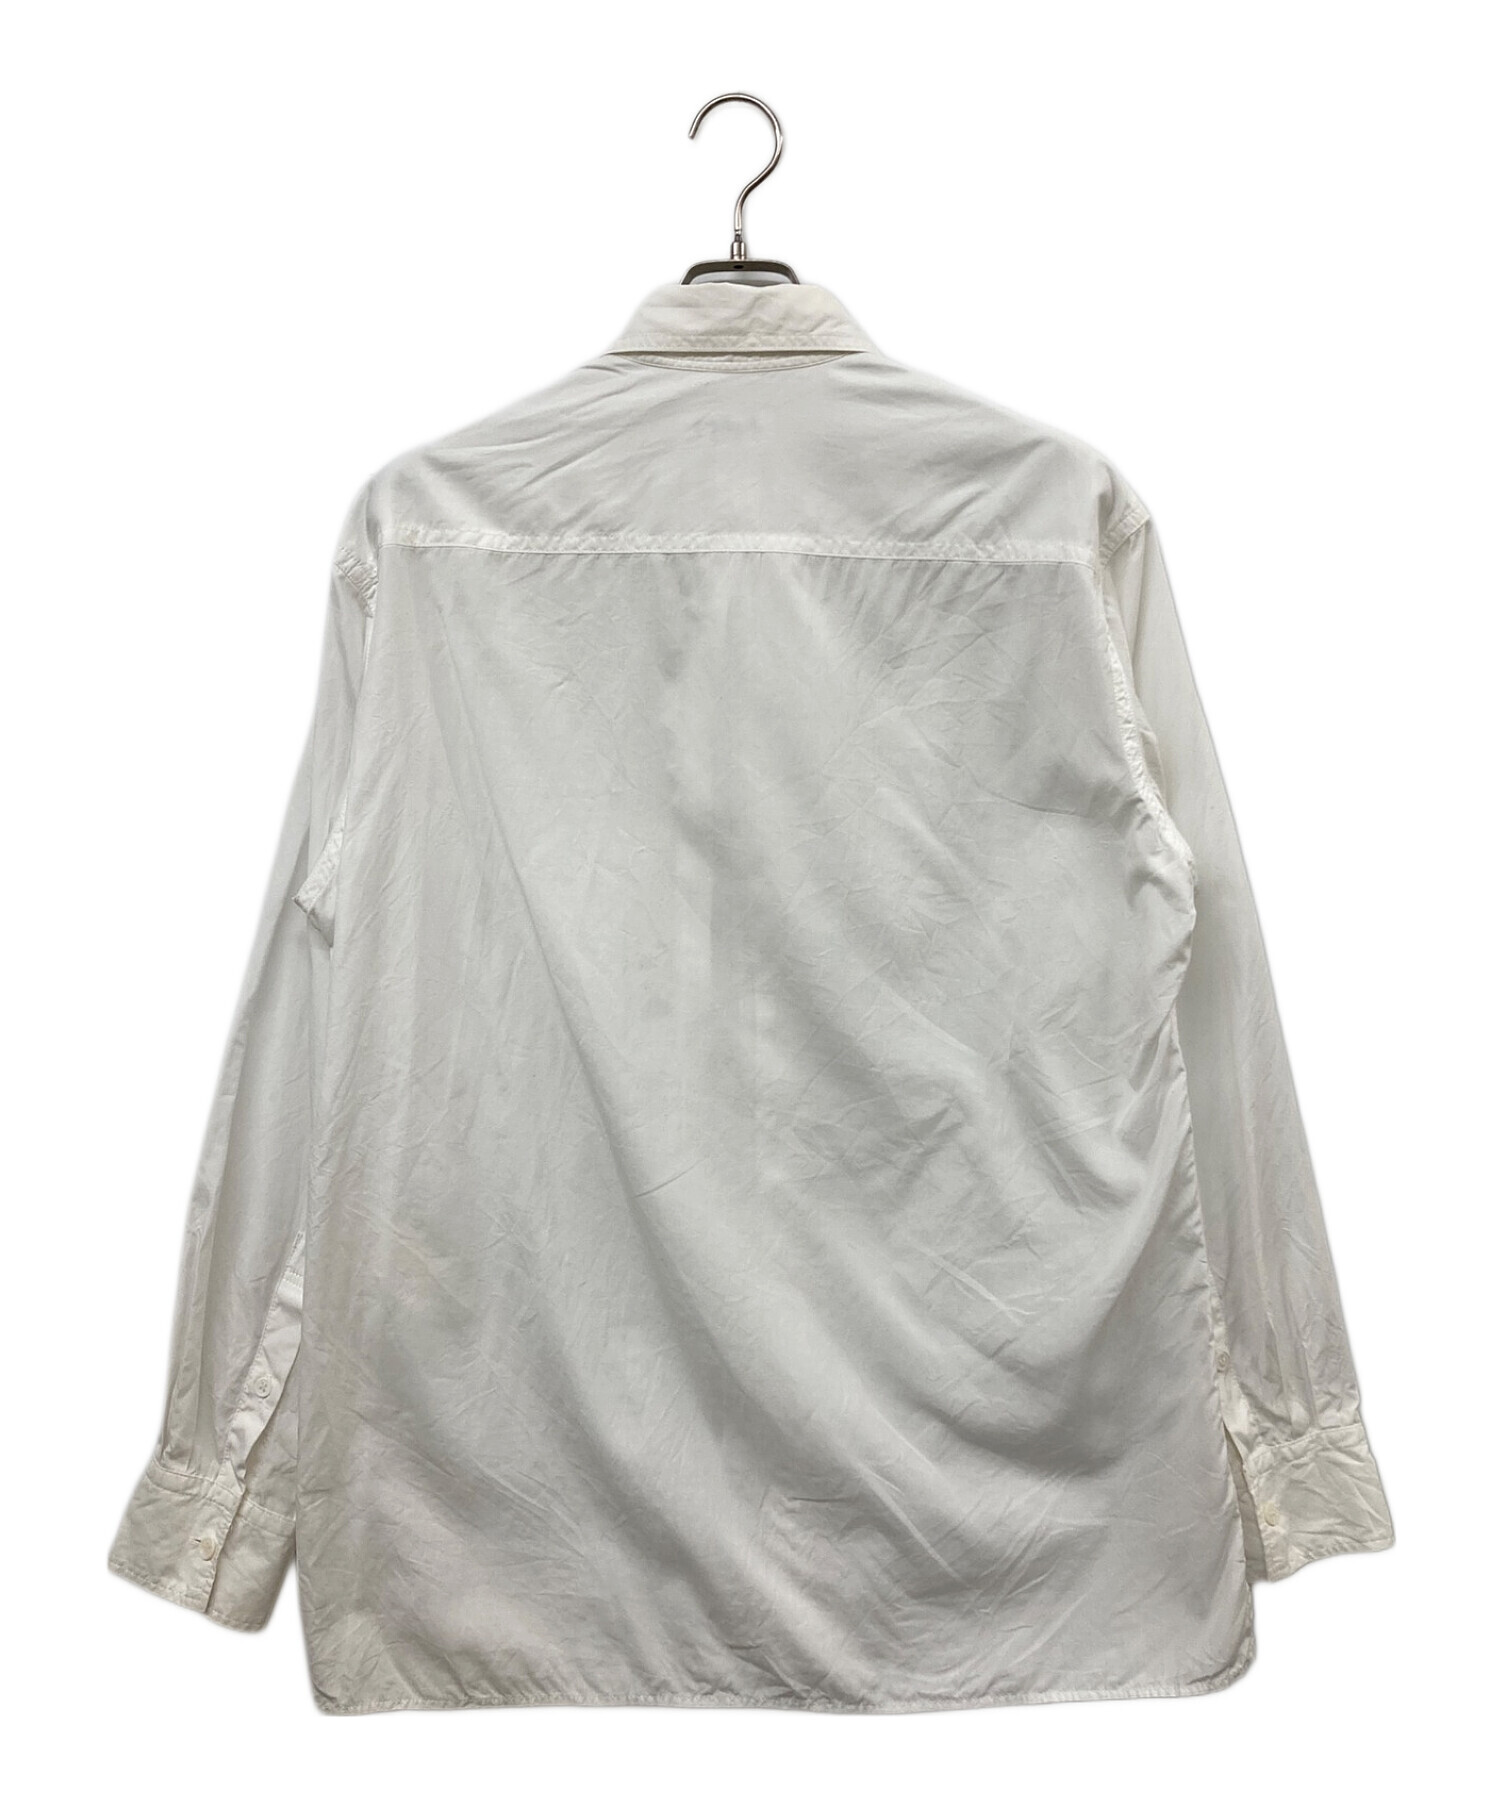 Yohji Yamamoto pour homme (ヨウジヤマモト プールオム) A-右前切り替え環縫いシャツ ホワイト サイズ:4